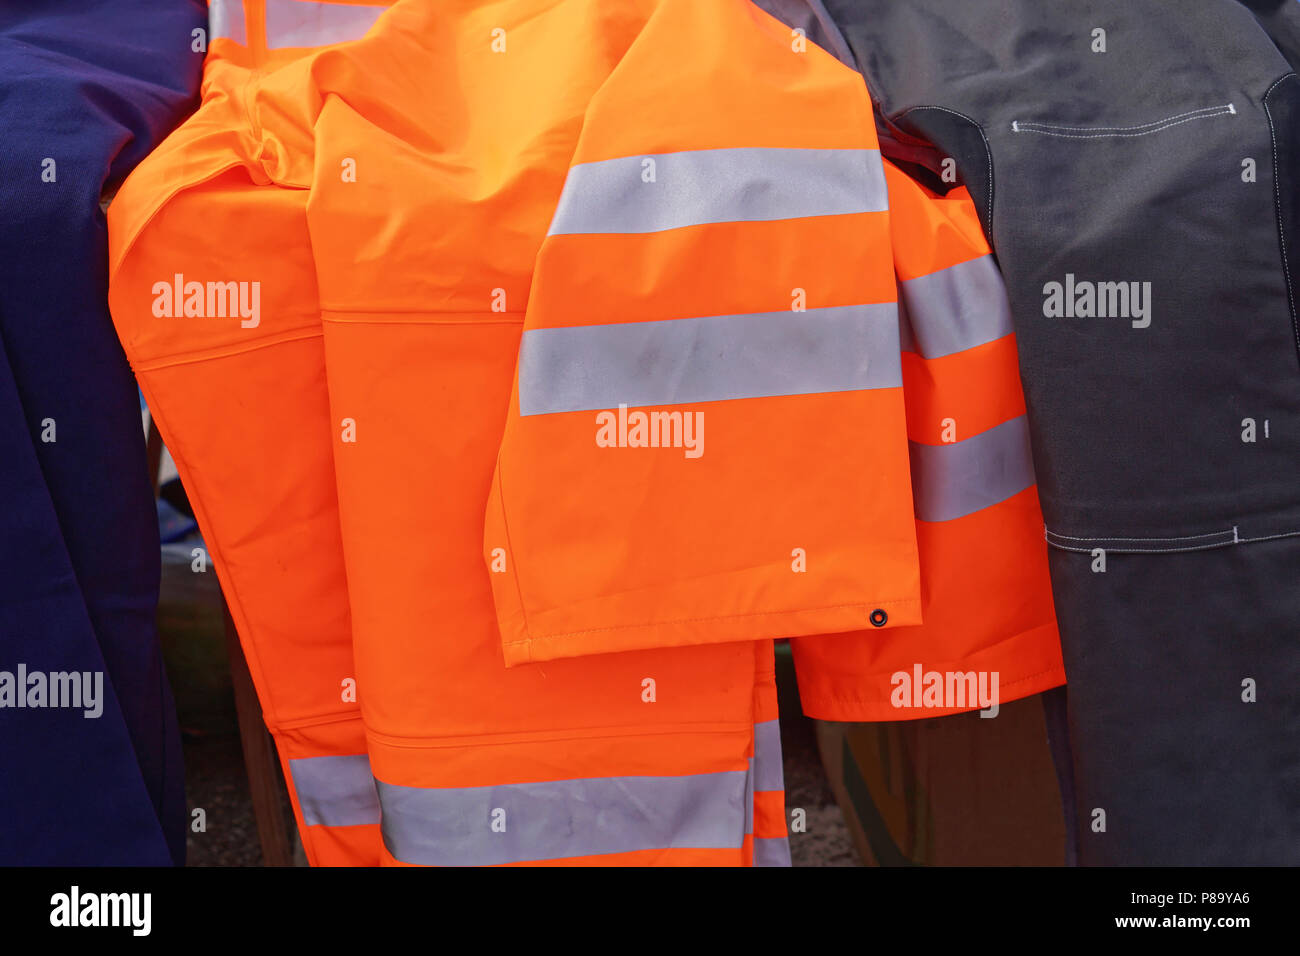 Reflective orange safety clothing for work Stock Photo